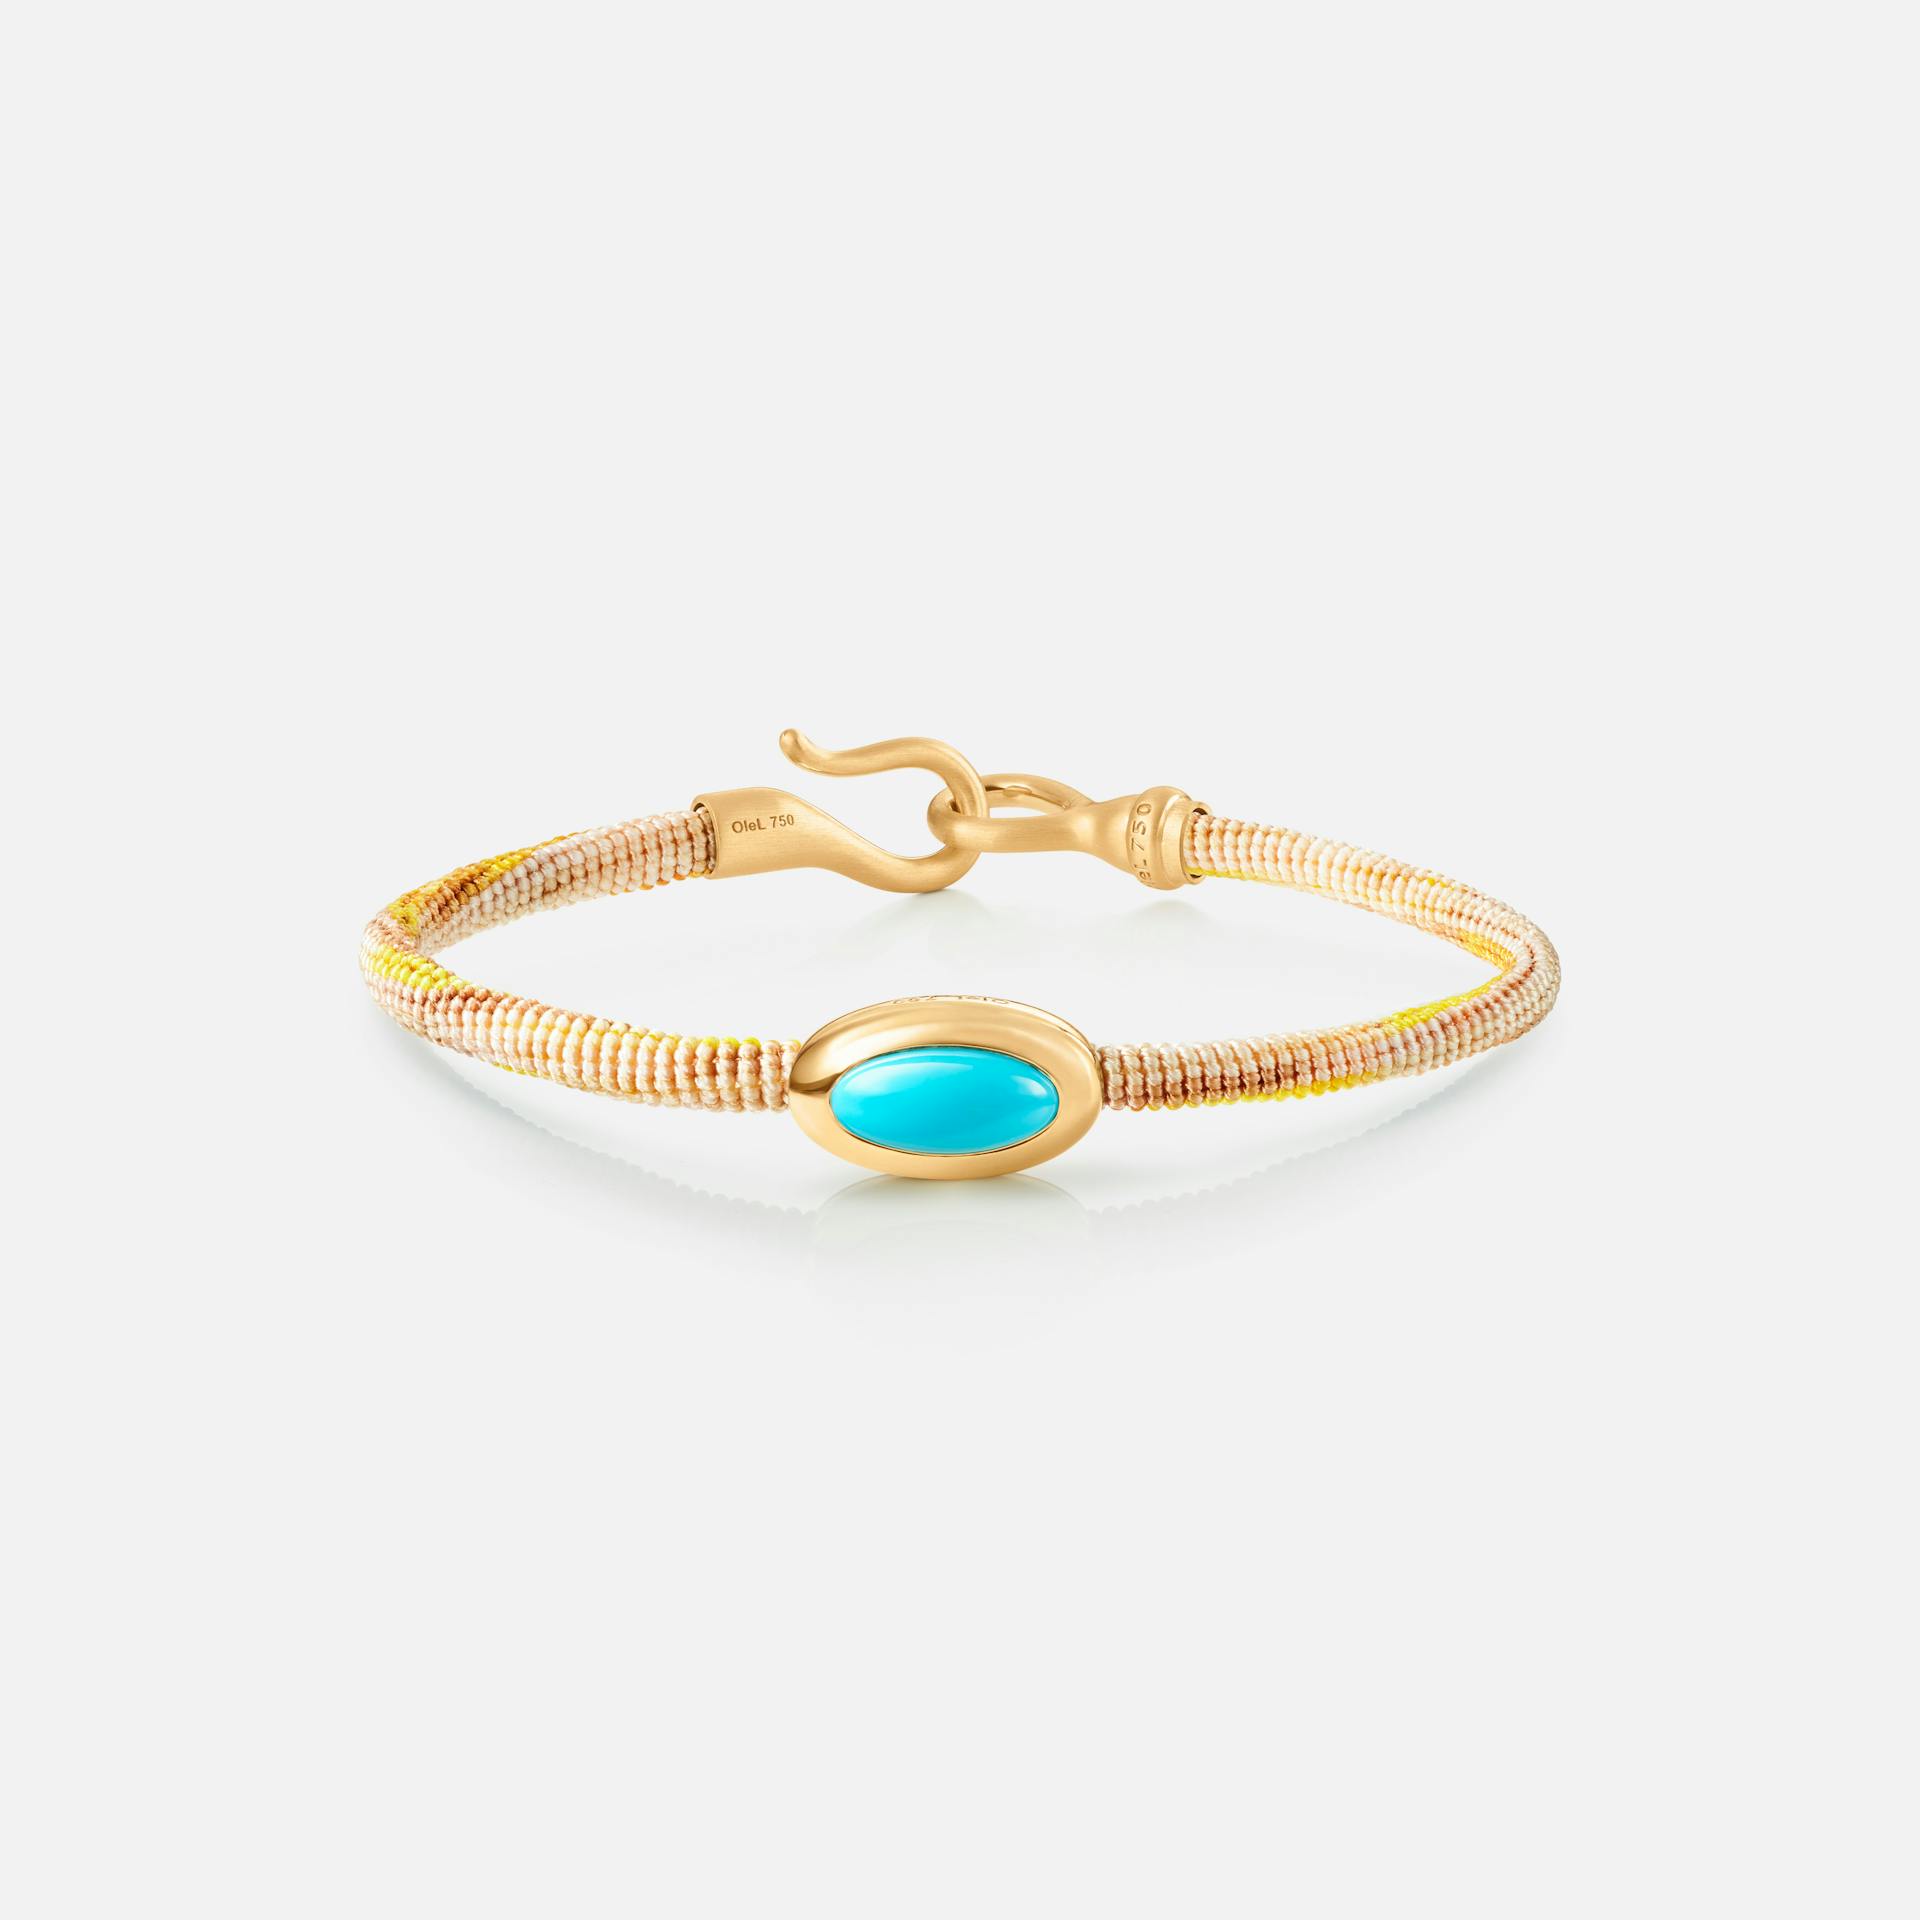 Life Bracelet with turquoise 4,5 mm 18k guld og turkis med Golden snor